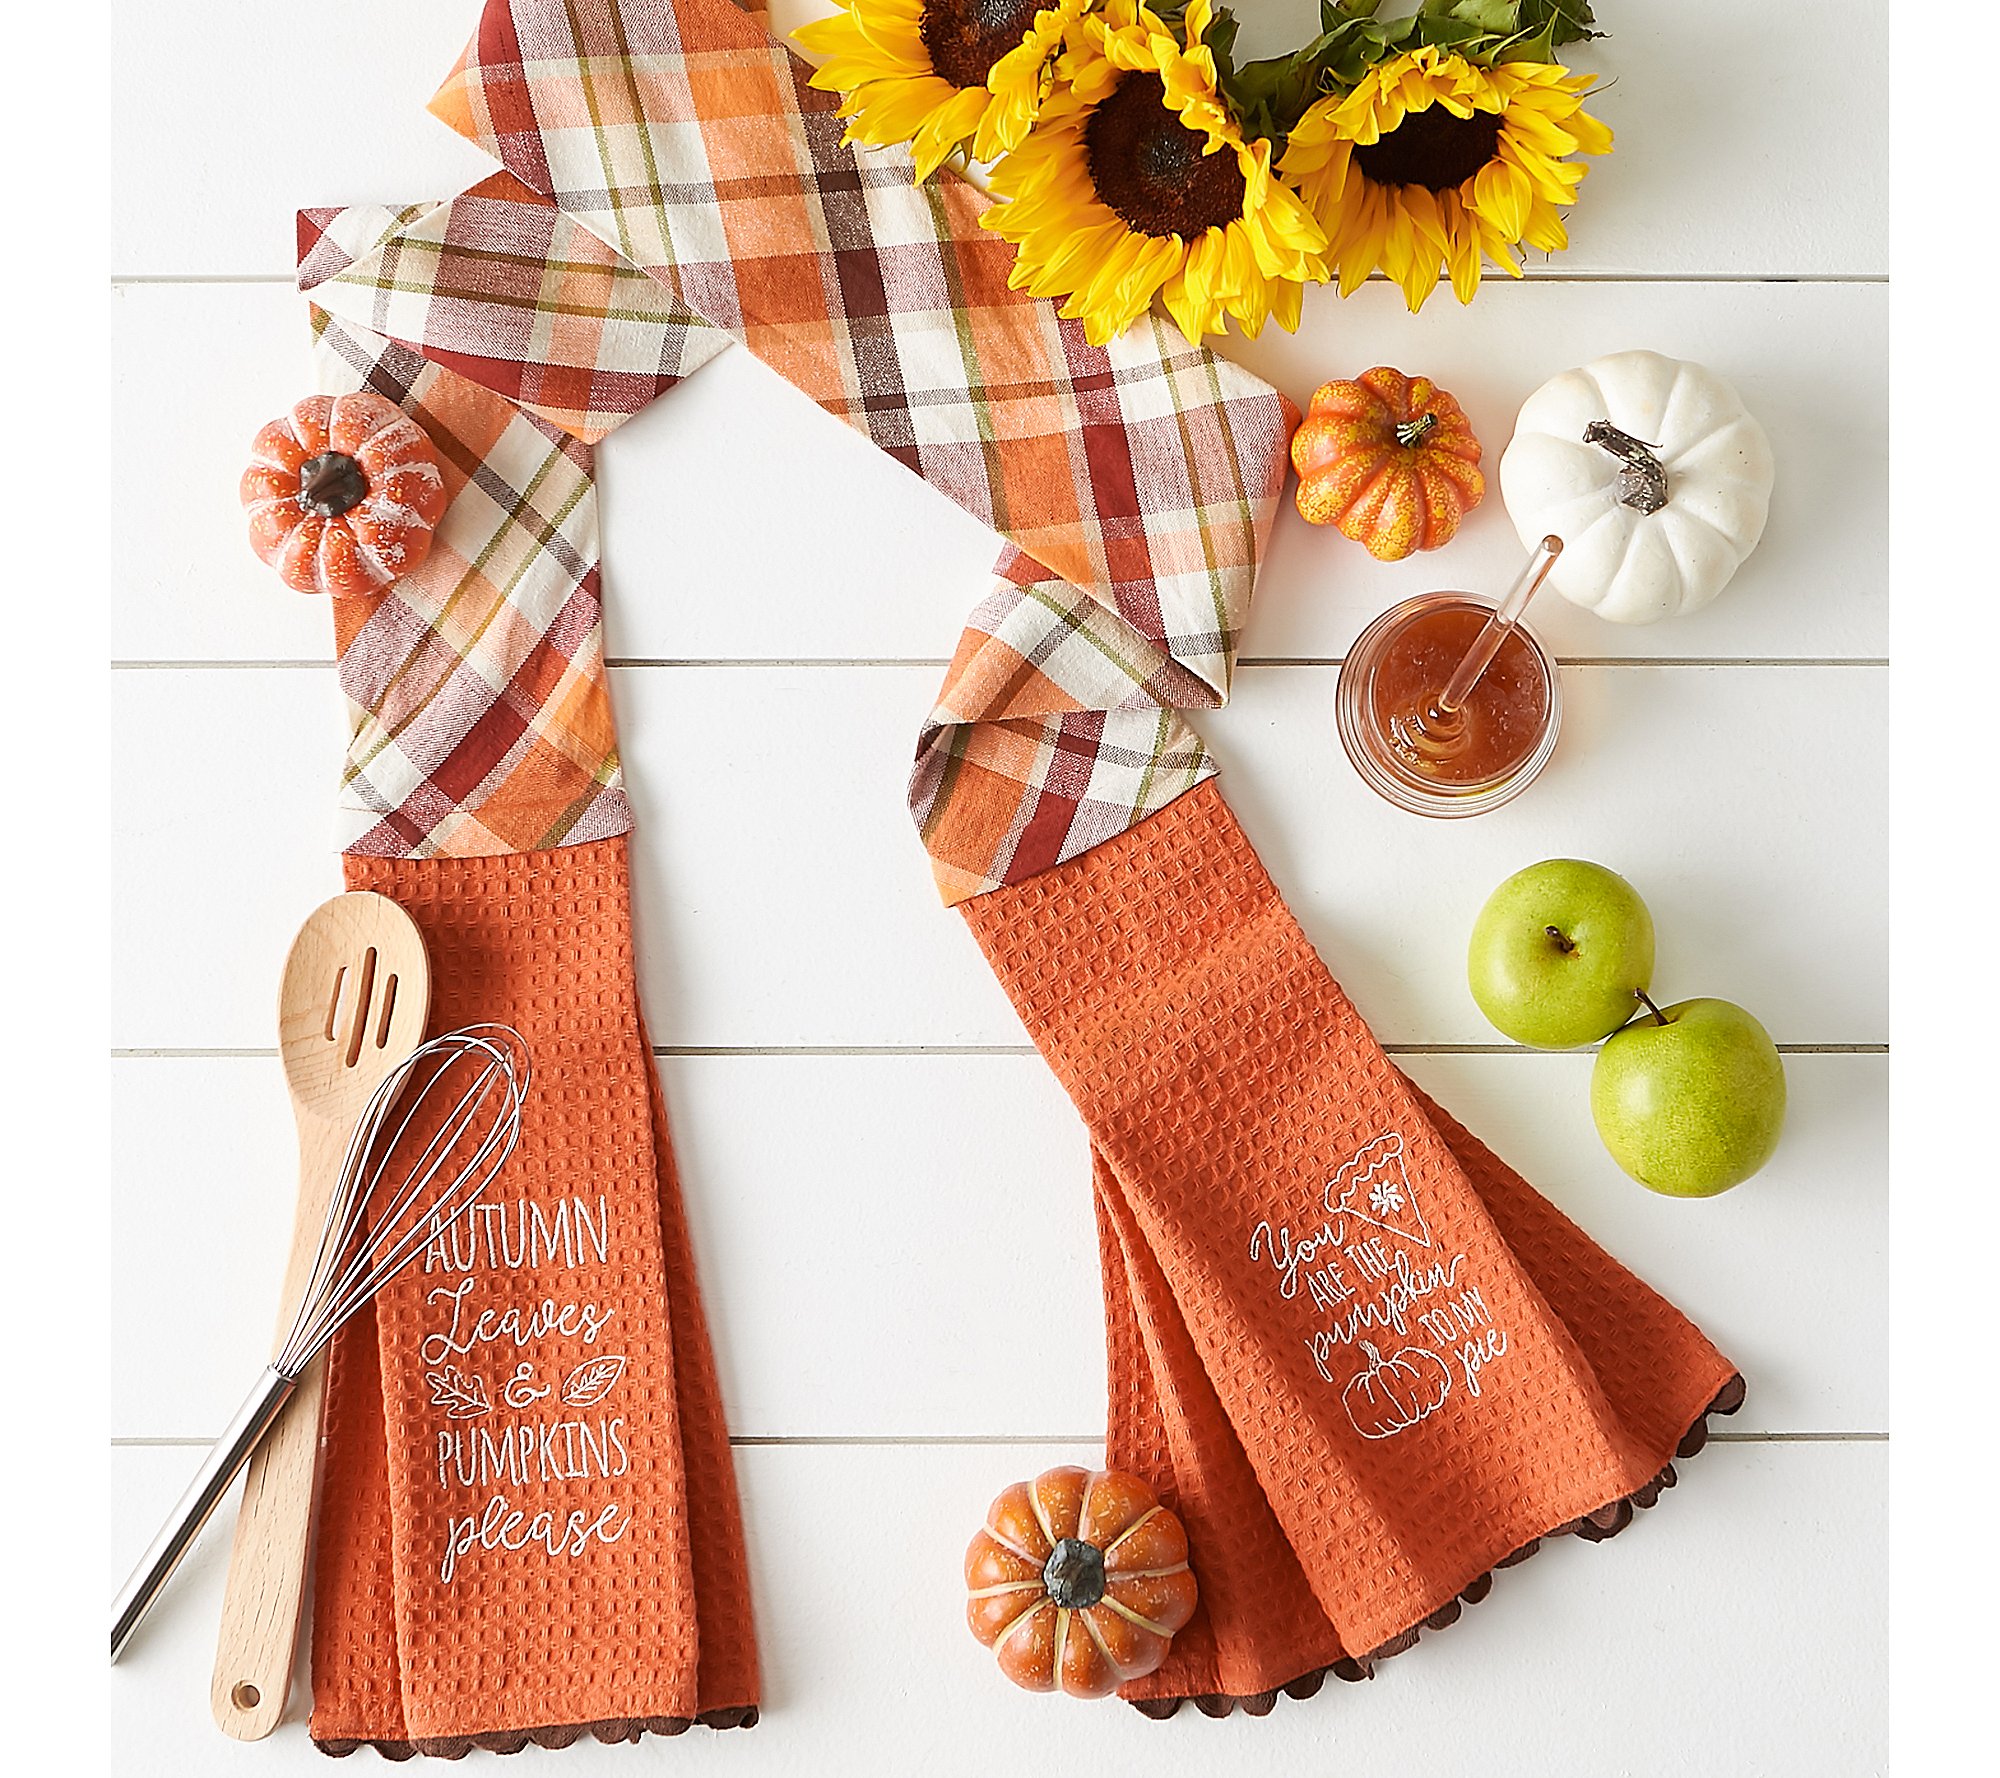 Design Imports Pumpkin Pie Kitchen Towel Scarf